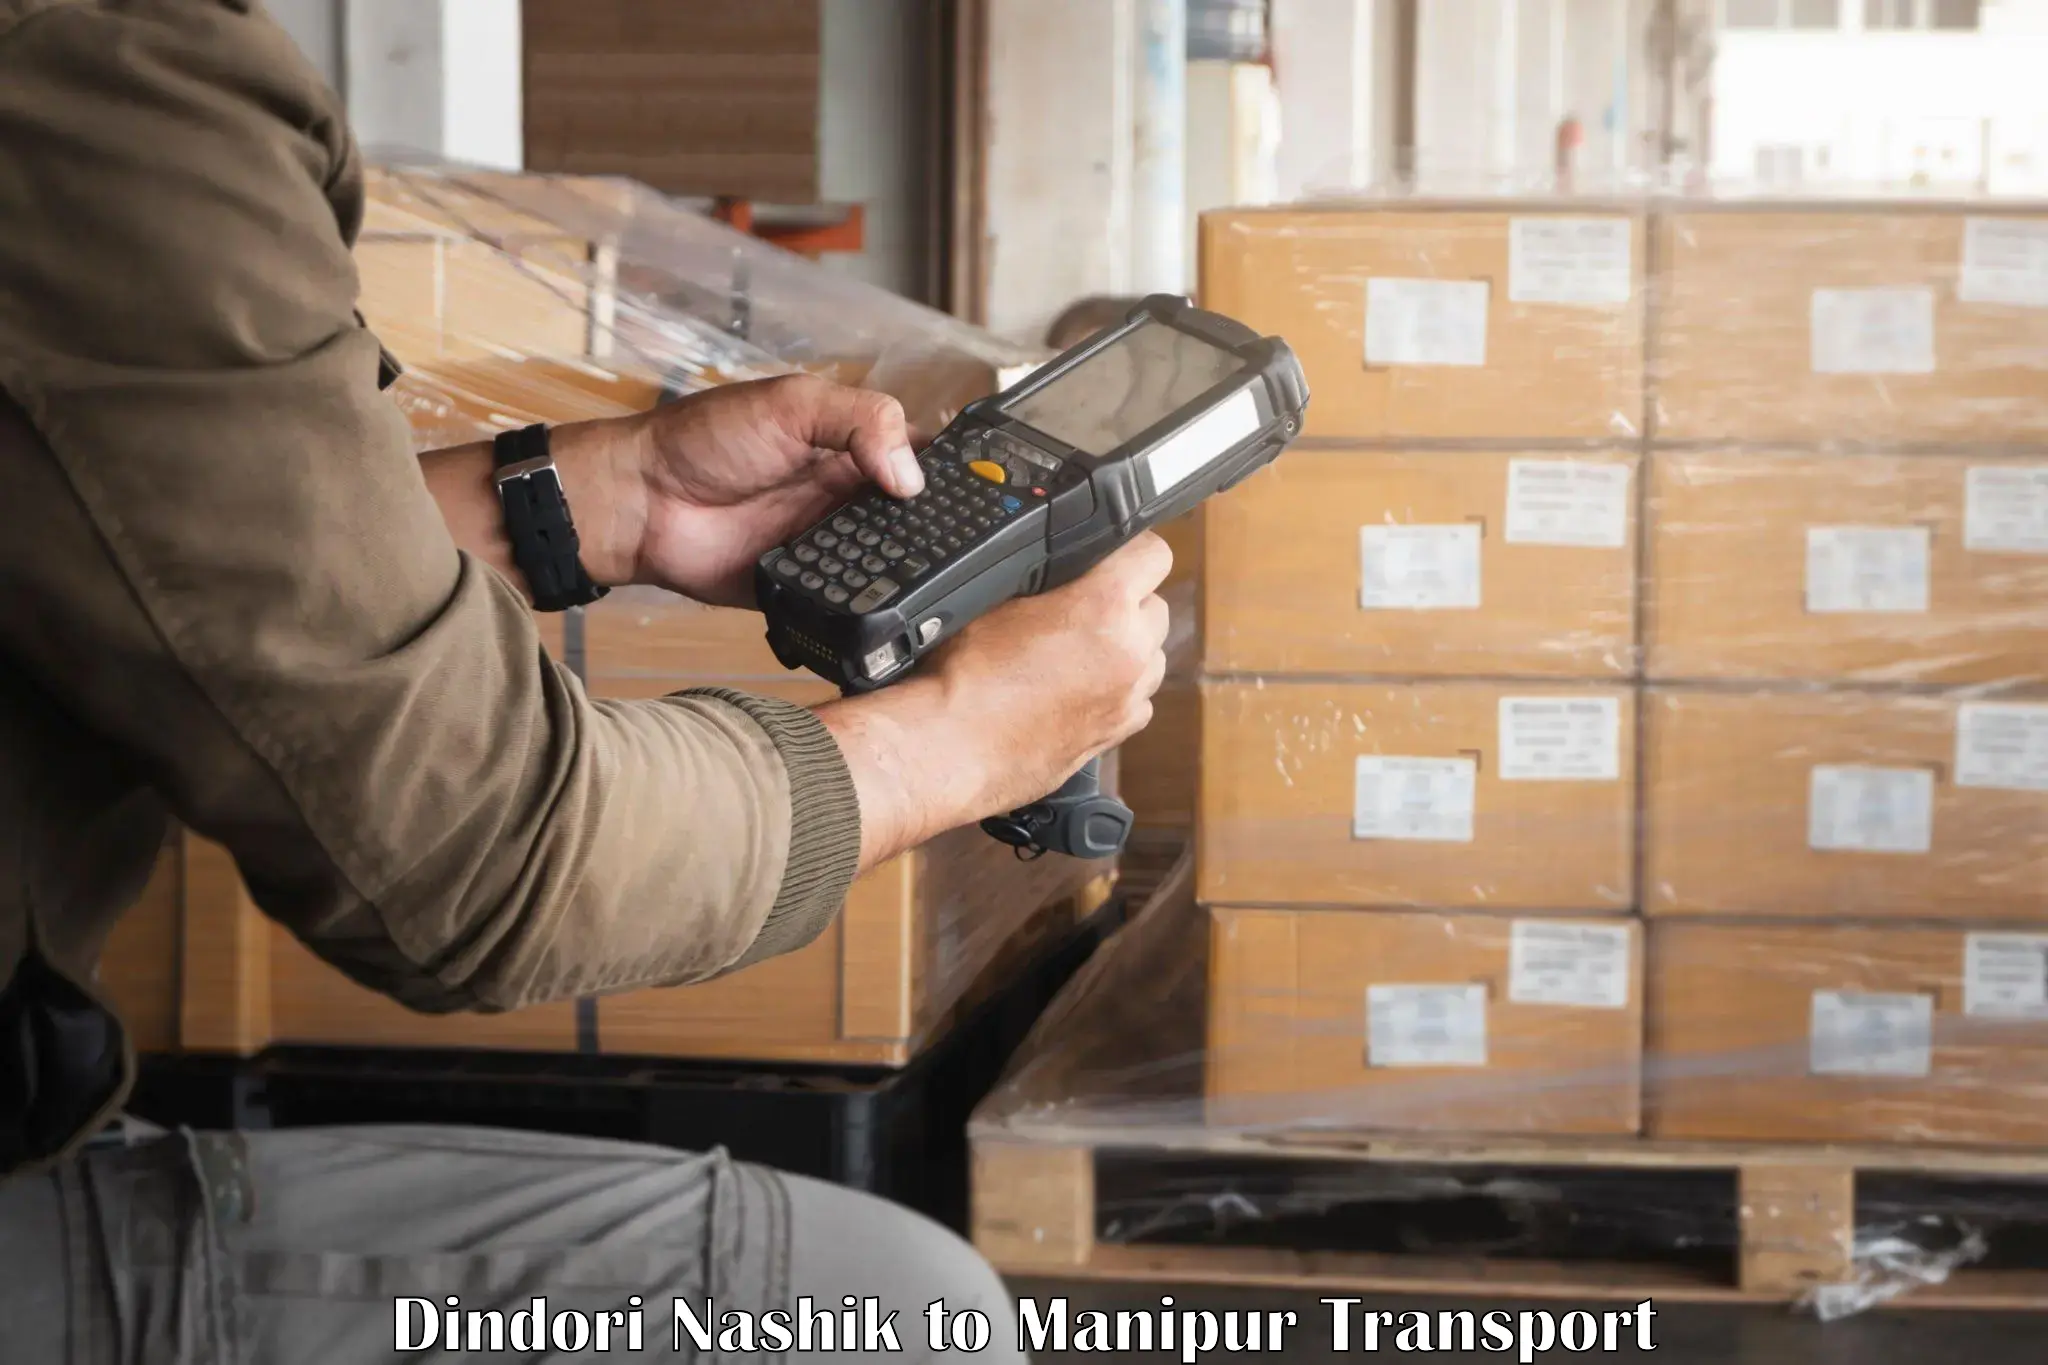 Vehicle parcel service Dindori Nashik to Manipur